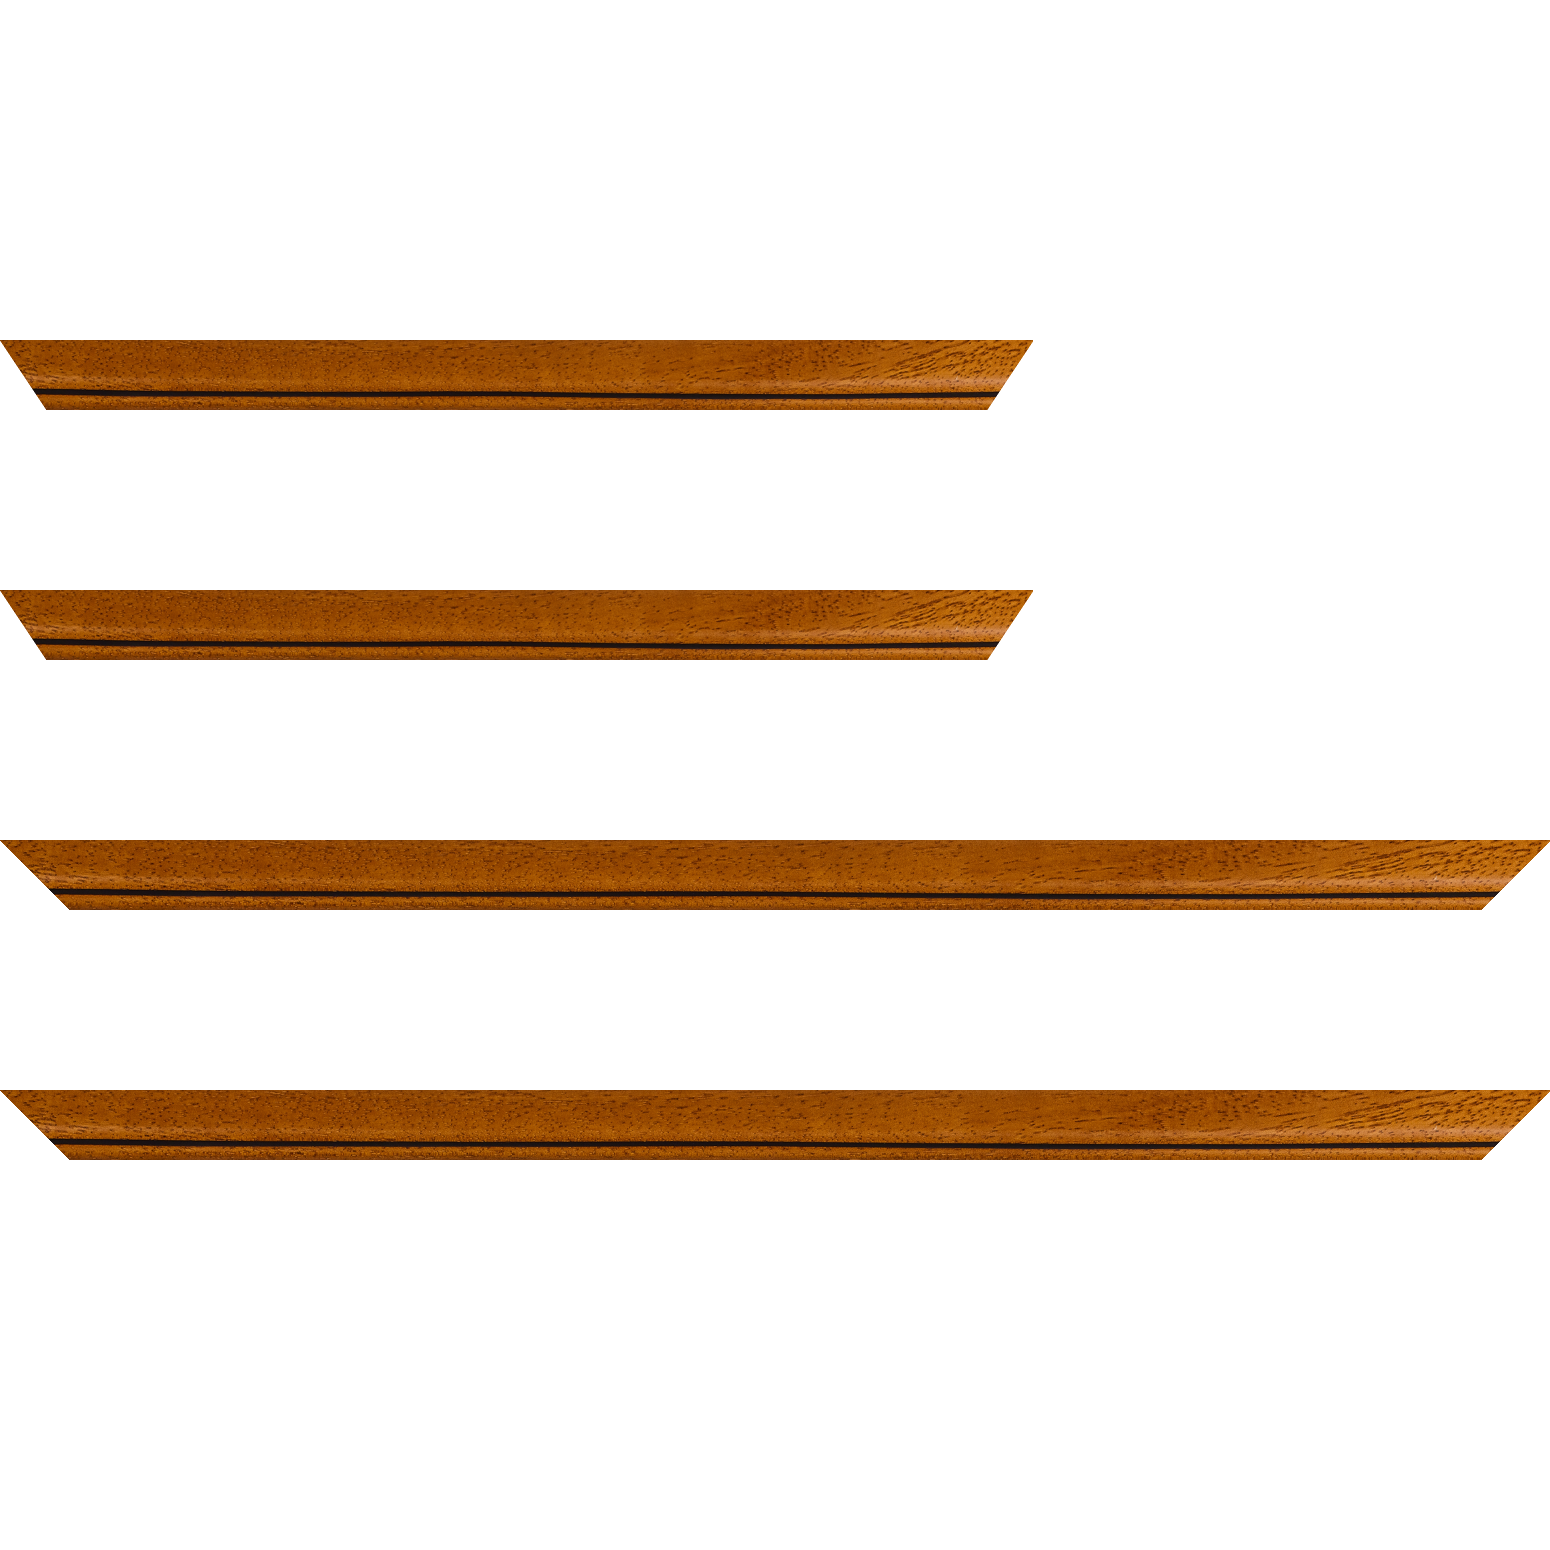 Baguette bois profil bombé largeur 2.4cm couleur marron ton bois satiné filet noir - 70x100